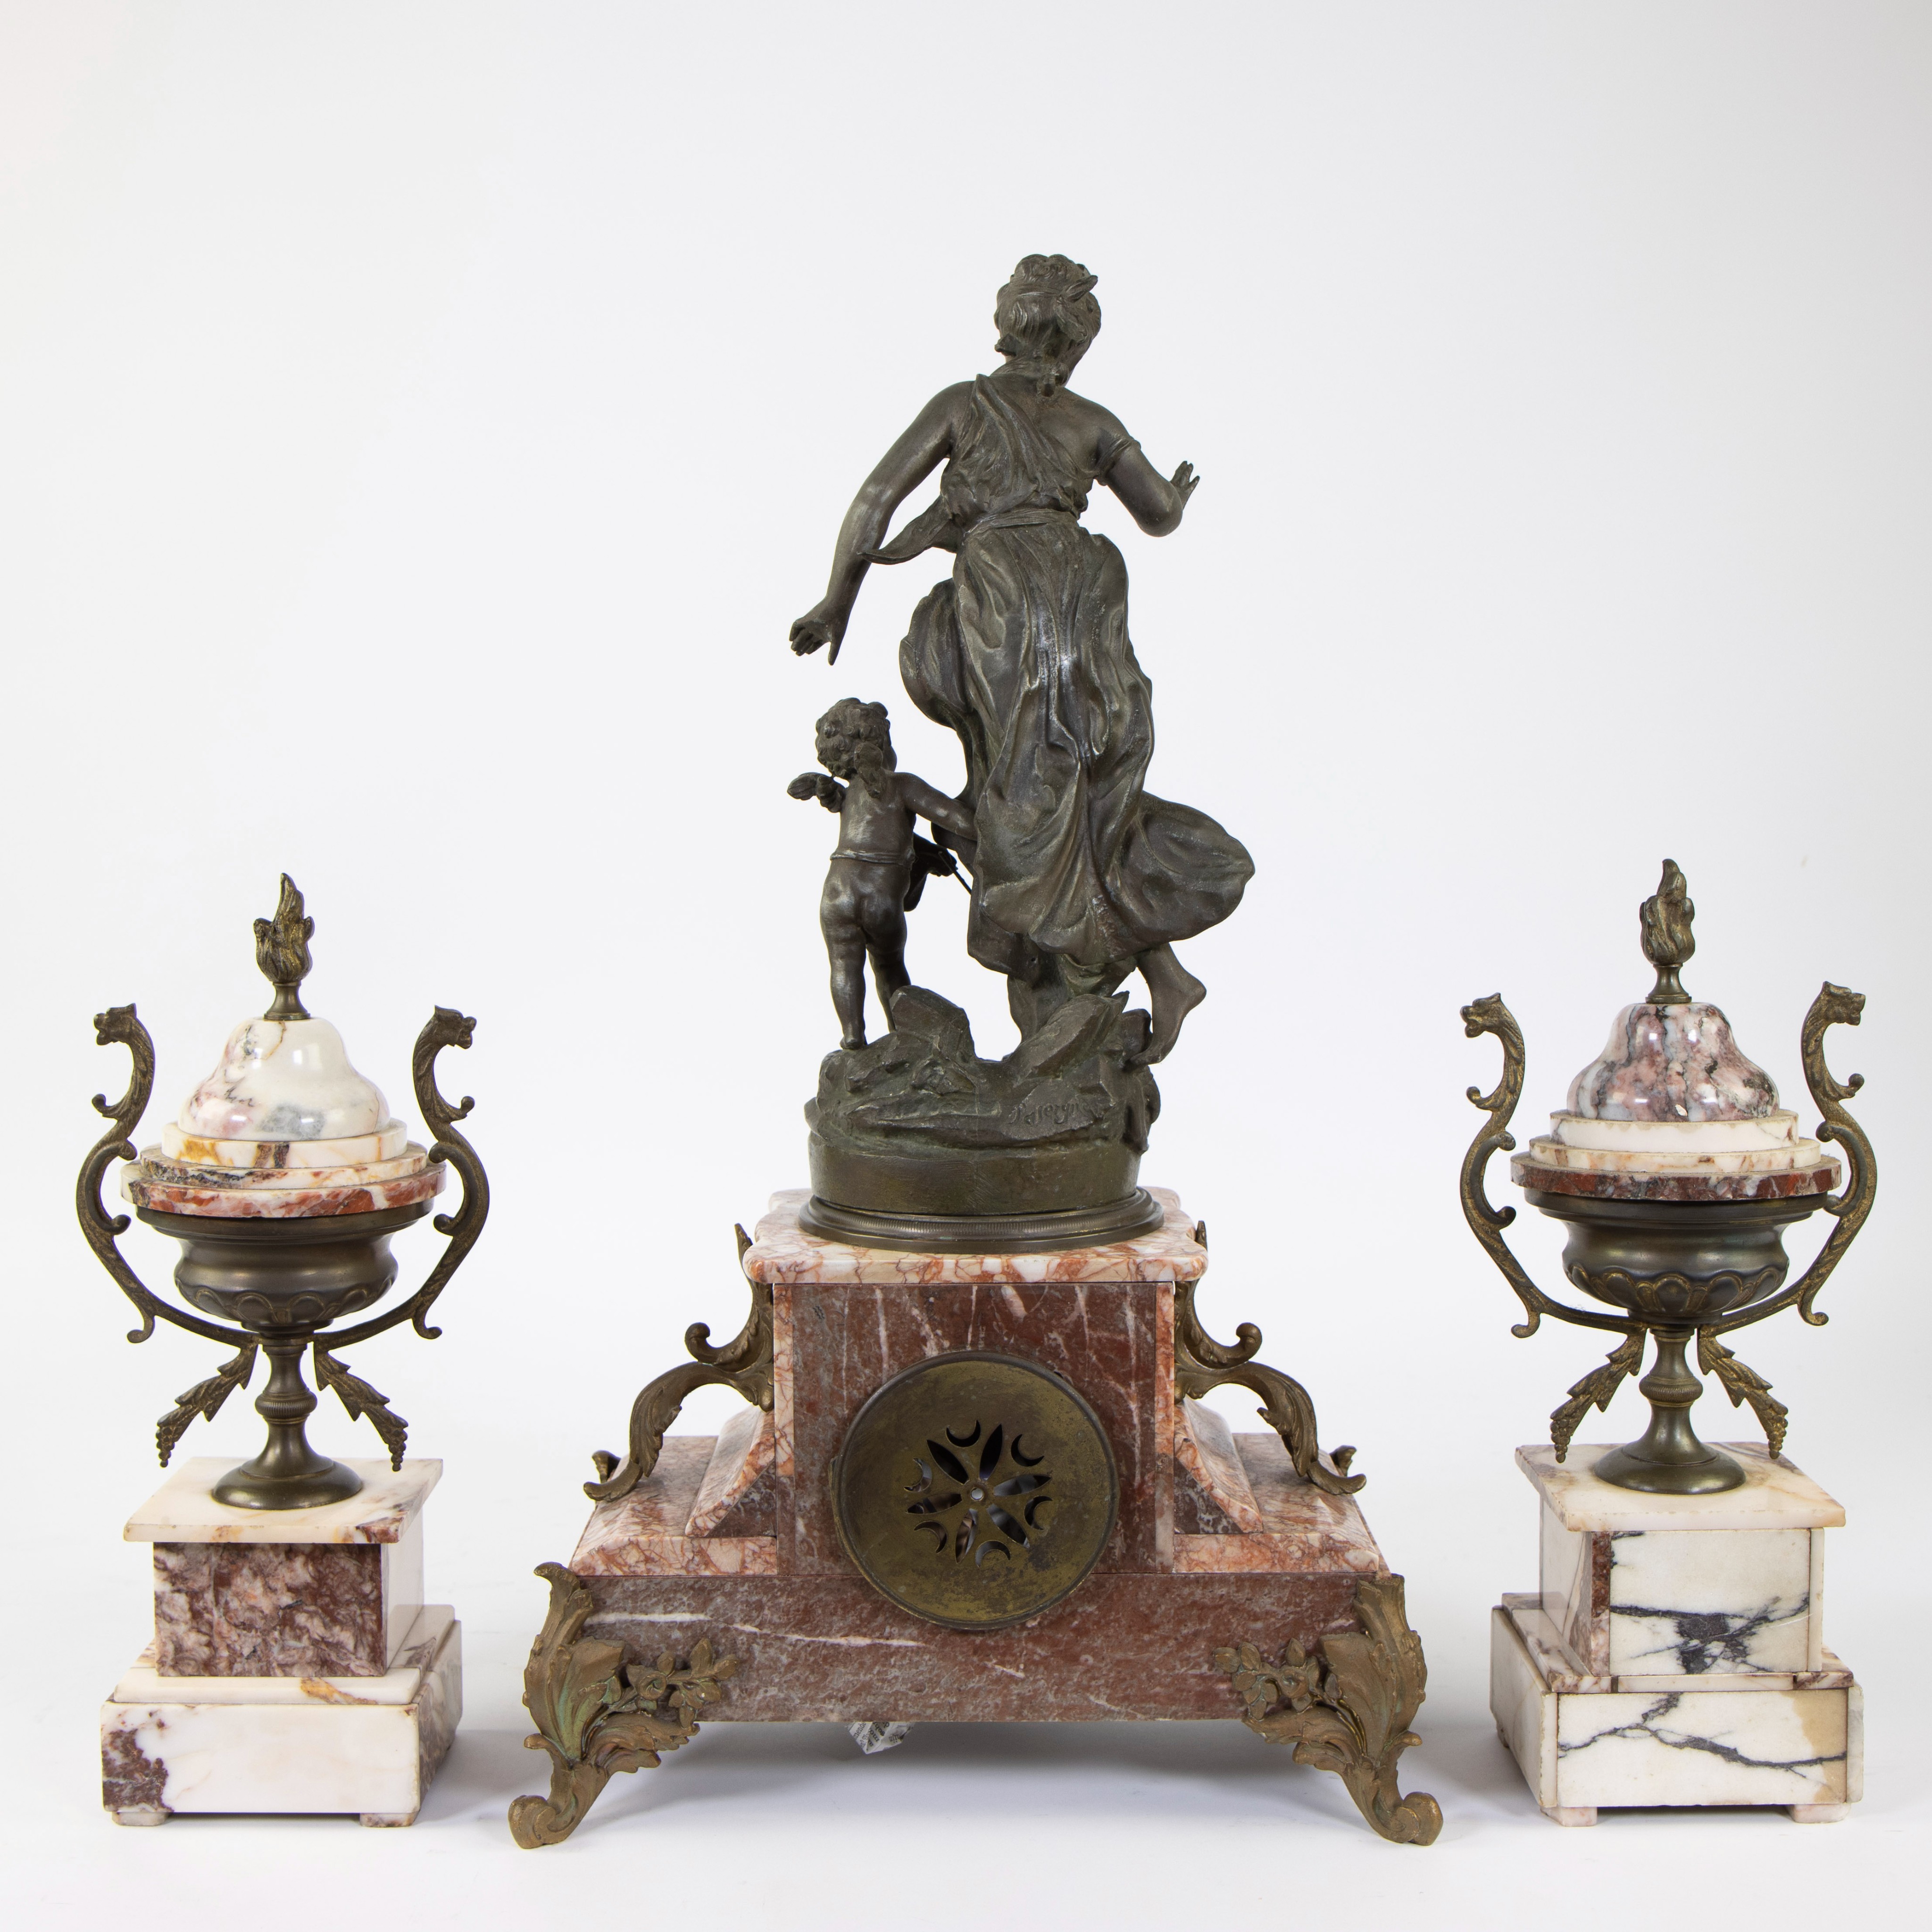 French 3 piece marble mantel clock, bronze Badinage, Hippolyte MOREAU, signed Savery, 19th century - Image 3 of 5